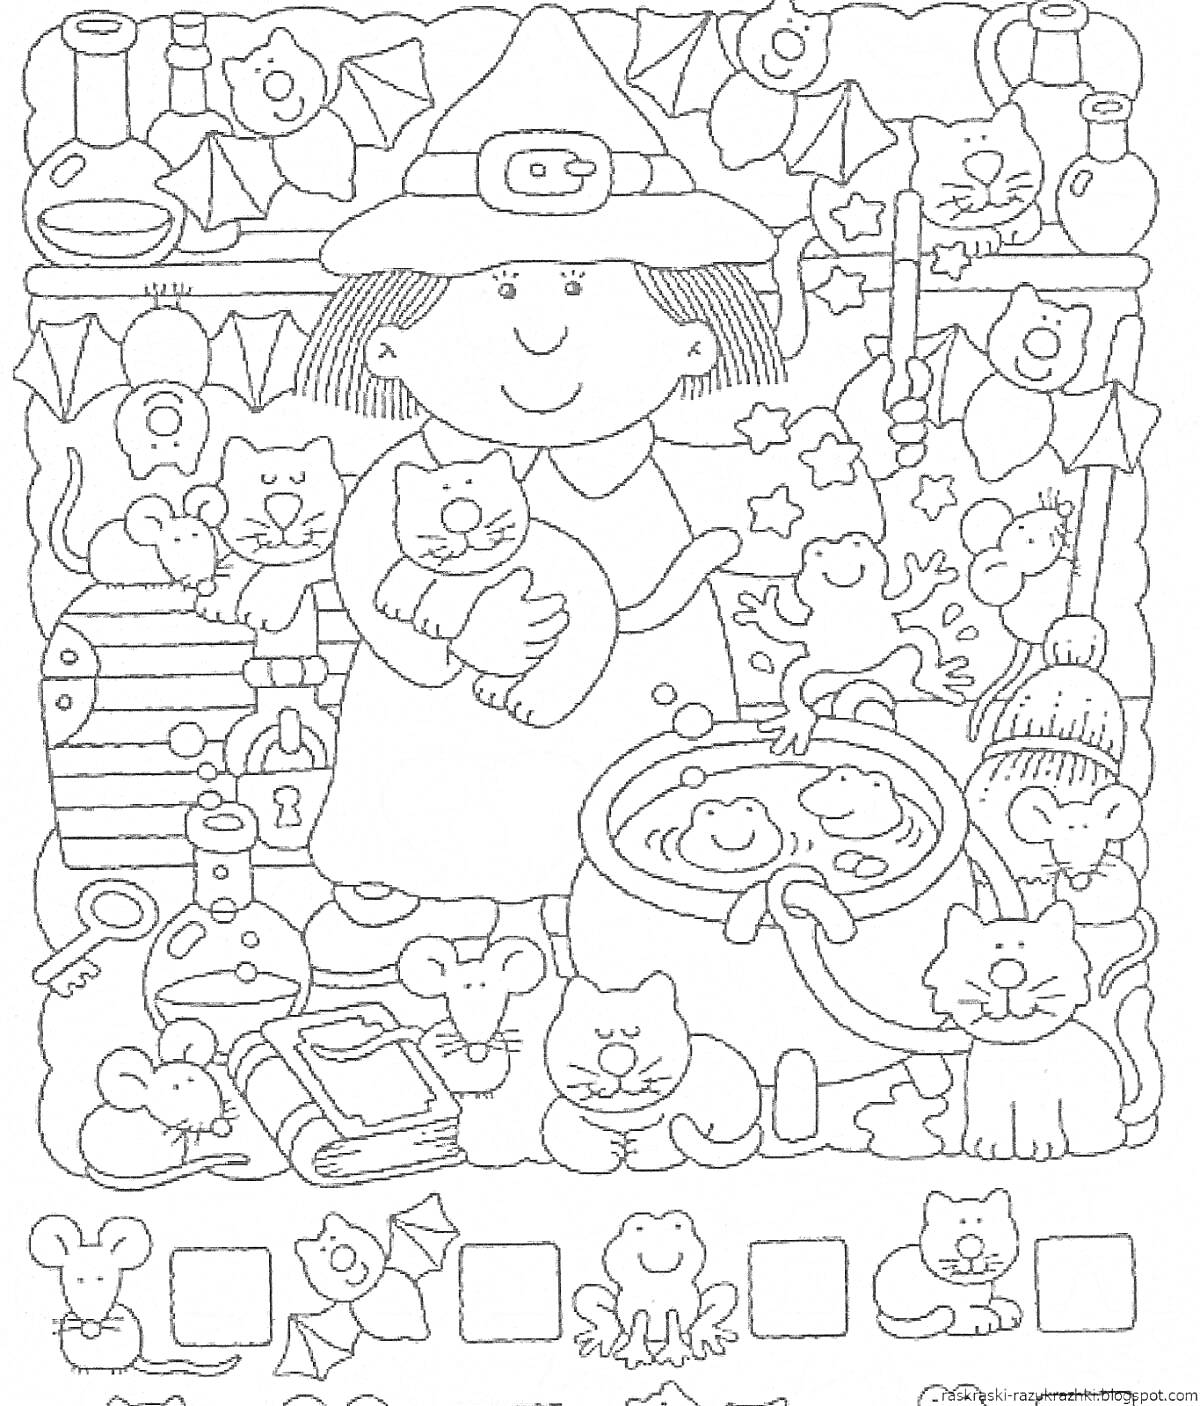 Раскраска Девочка-ведьмочка с котом, окруженная волшебными предметами и существами